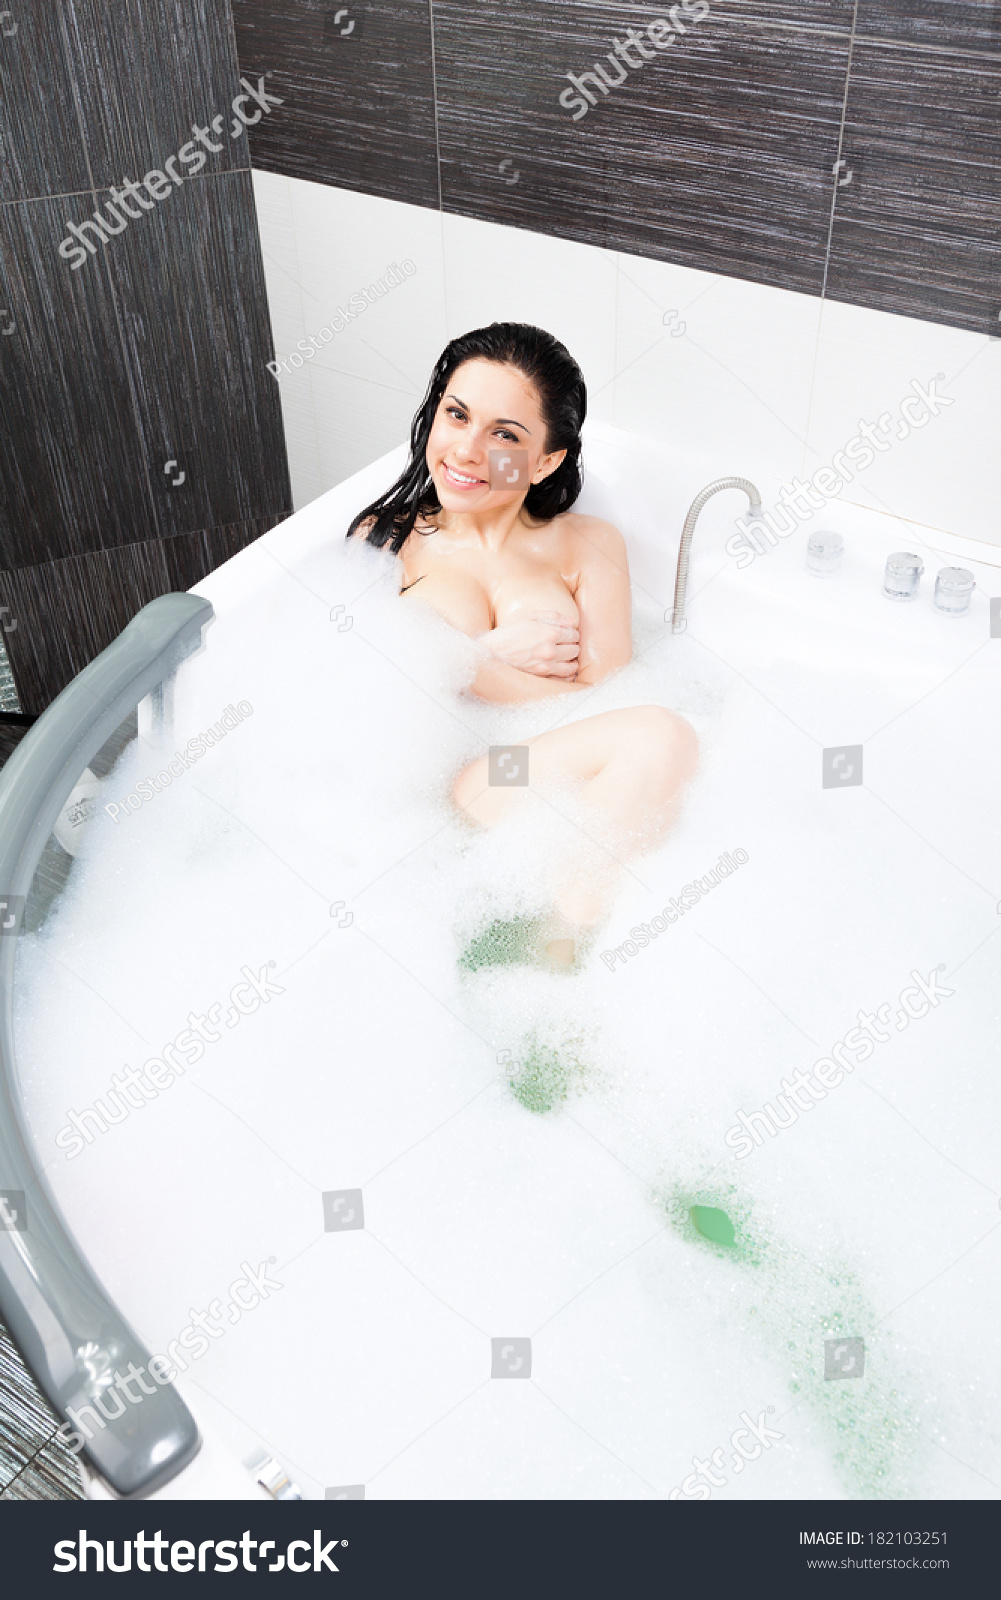 alyssa bommarito add photo sexy girl in bathtub